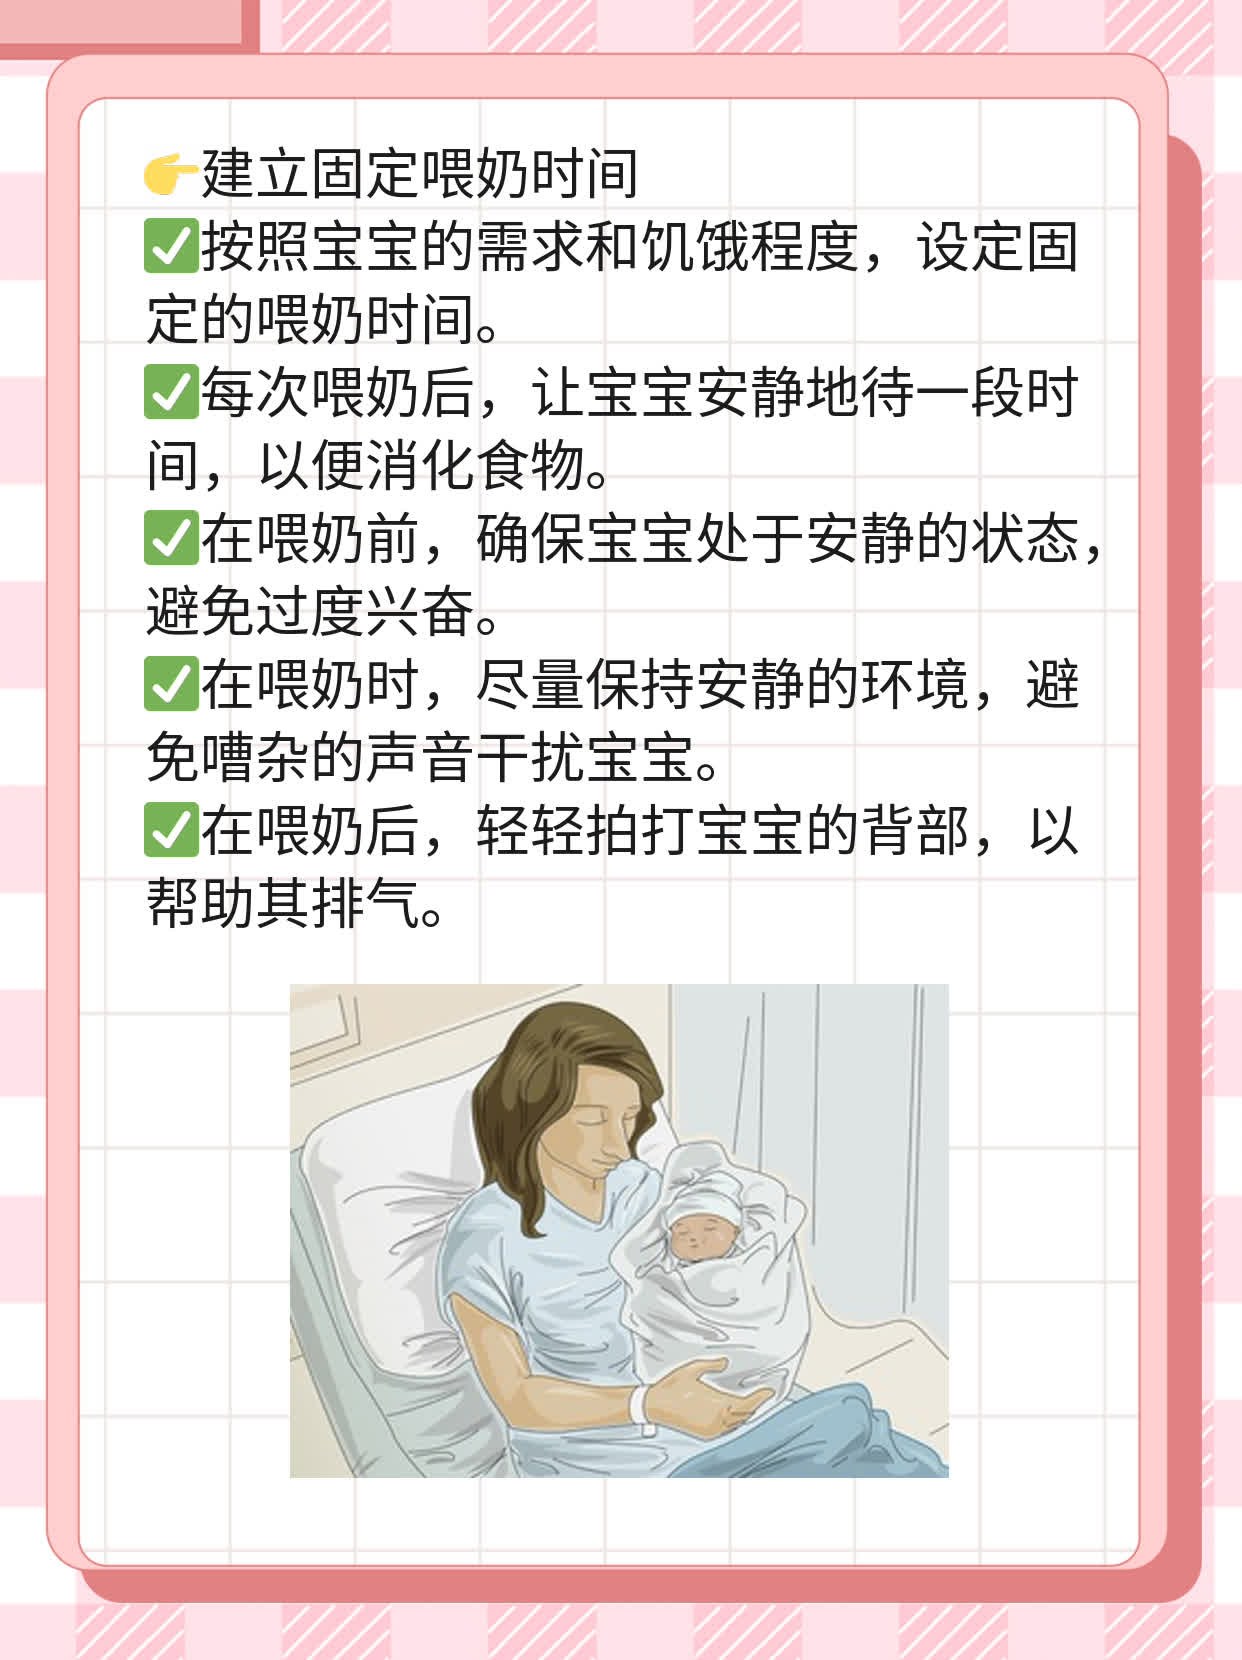 「育儿难题」：1个月宝宝夜醒不止，如何调整？